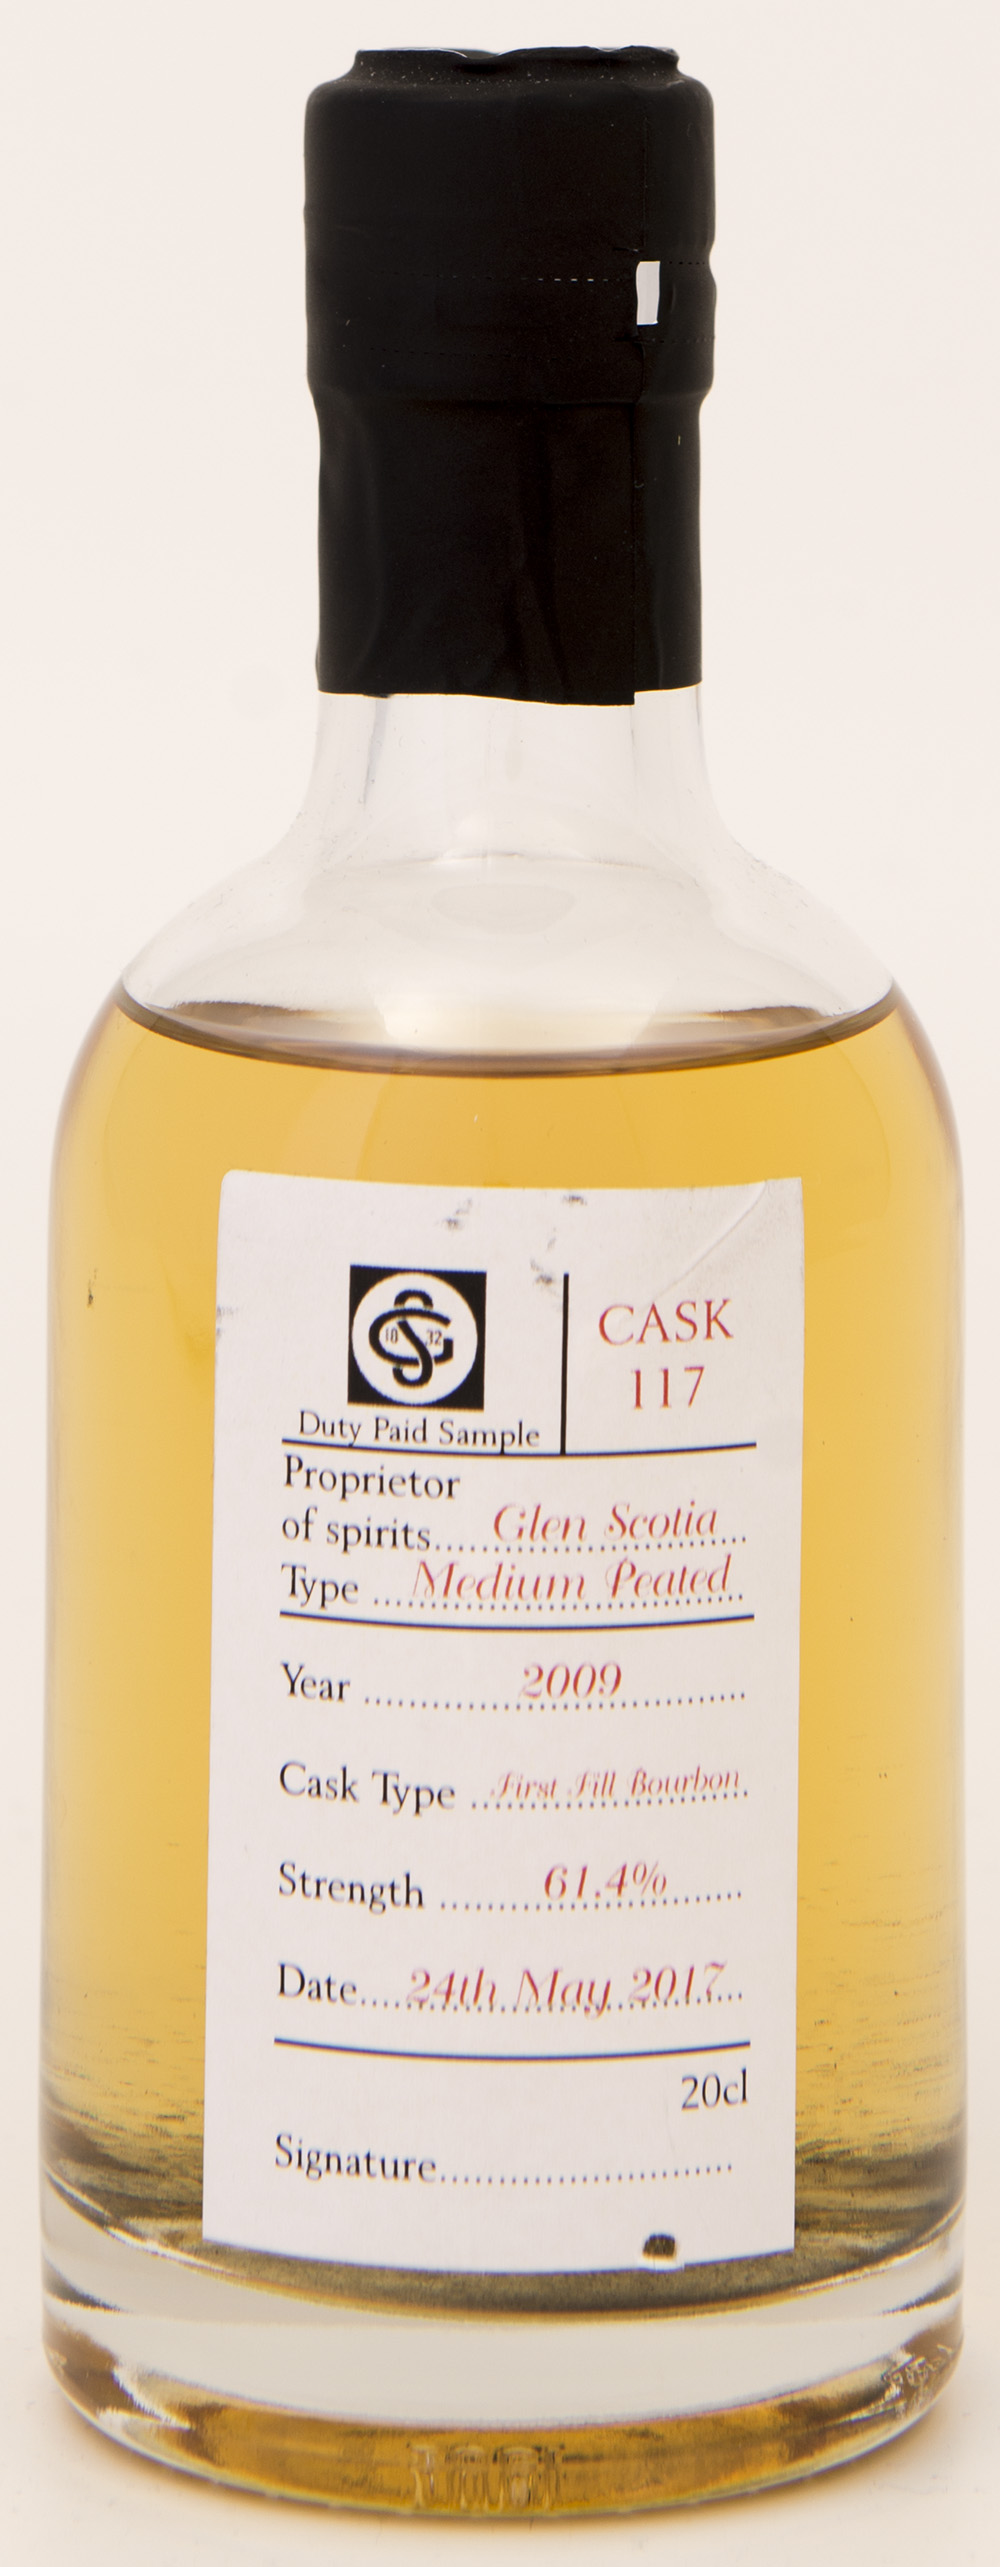 Billede: DSC_3251 - Glen Scotia cask 117 2009 - sample bottle from Open Day 2017 - bottle front.jpg